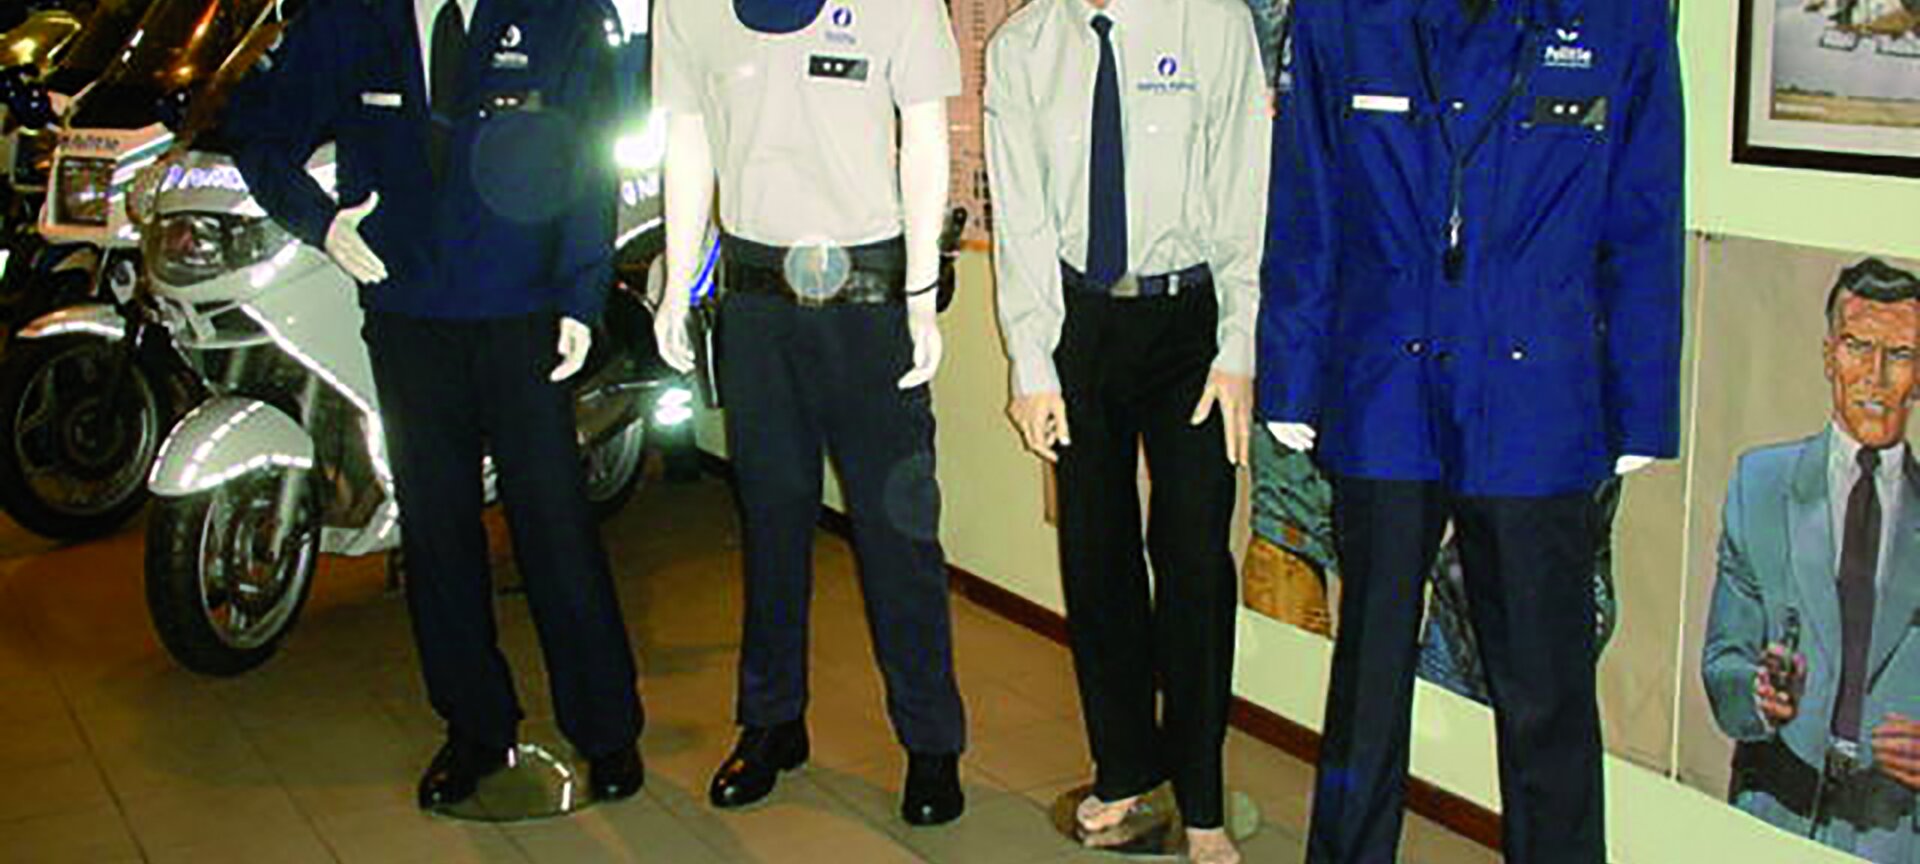 Politie- en Motormuseum - Politie- en motormuseum